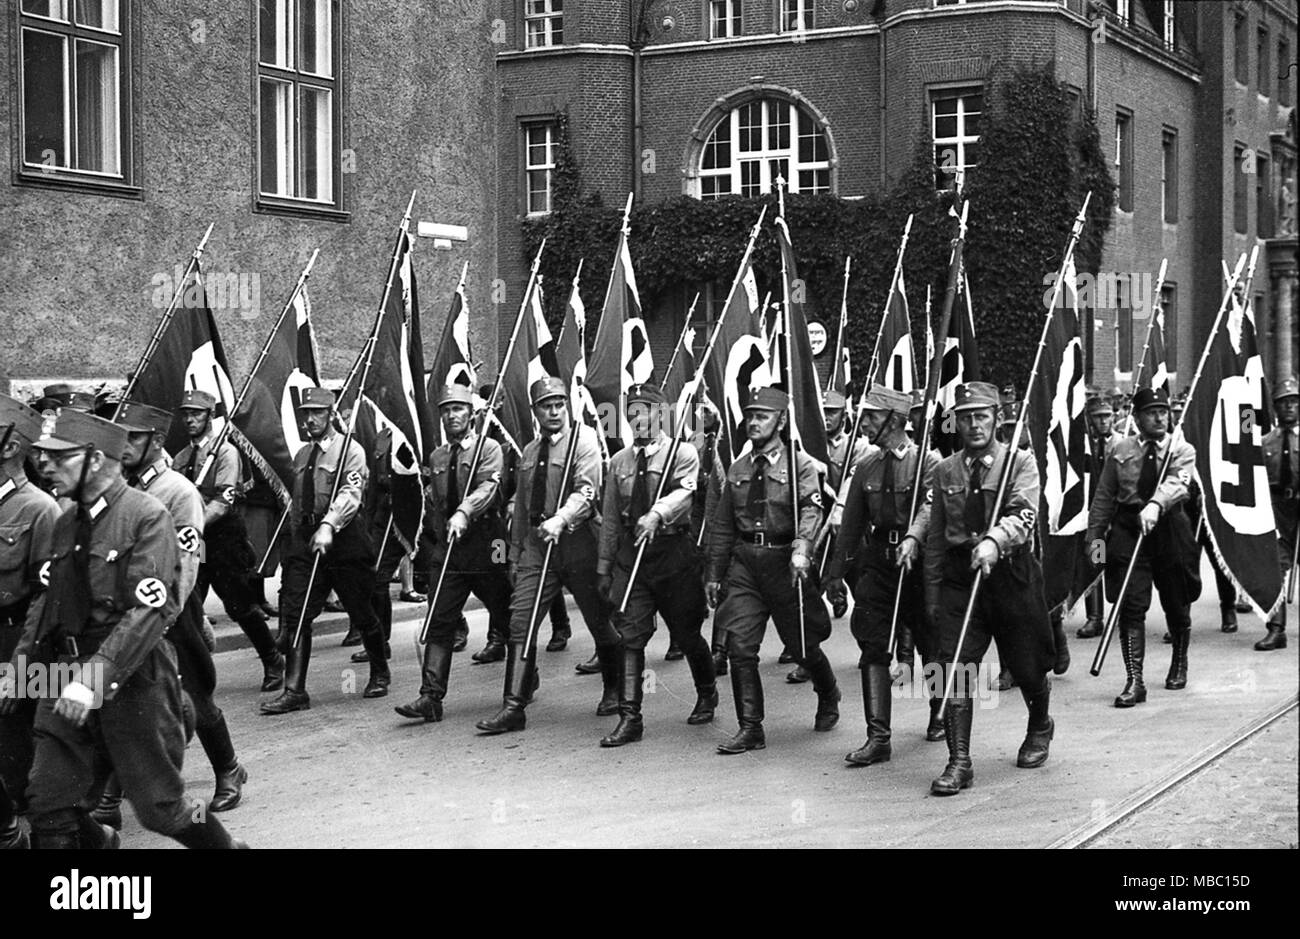 Également appelé Sturmabteilung stormtoopers Brownshirts et portant des drapeaux à croix gammée en 1934 alors qu'ils défilent dans Konigsberg en Allemagne. Konigsberg est devenu le territoire russe après la seconde guerre mondiale et a été rebaptisée Kaliningrad. Deutschland 1930 Banque D'Images